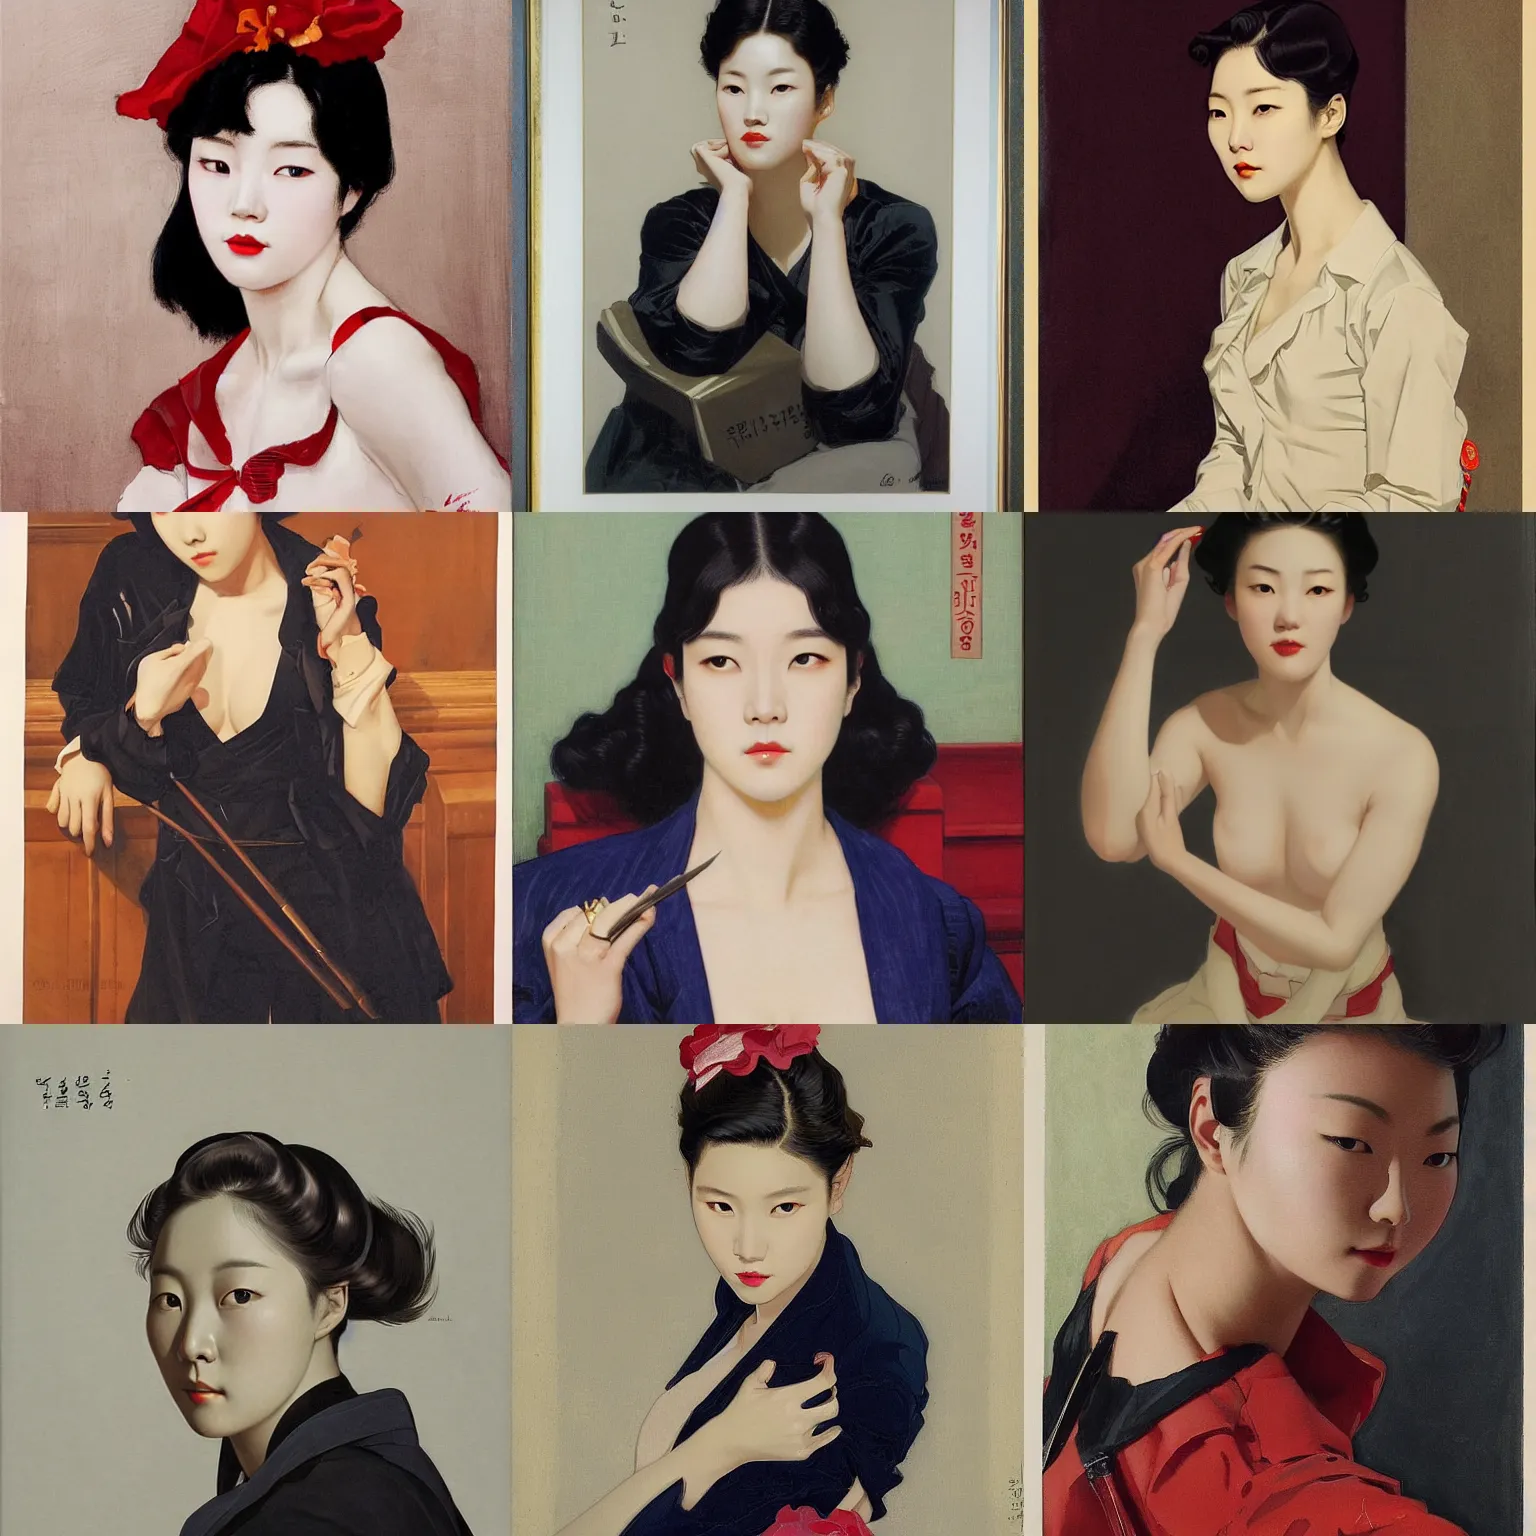 Prompt: lee jin - eun by j. c. leyendecker, rule of thirds, seductive look, beautiful